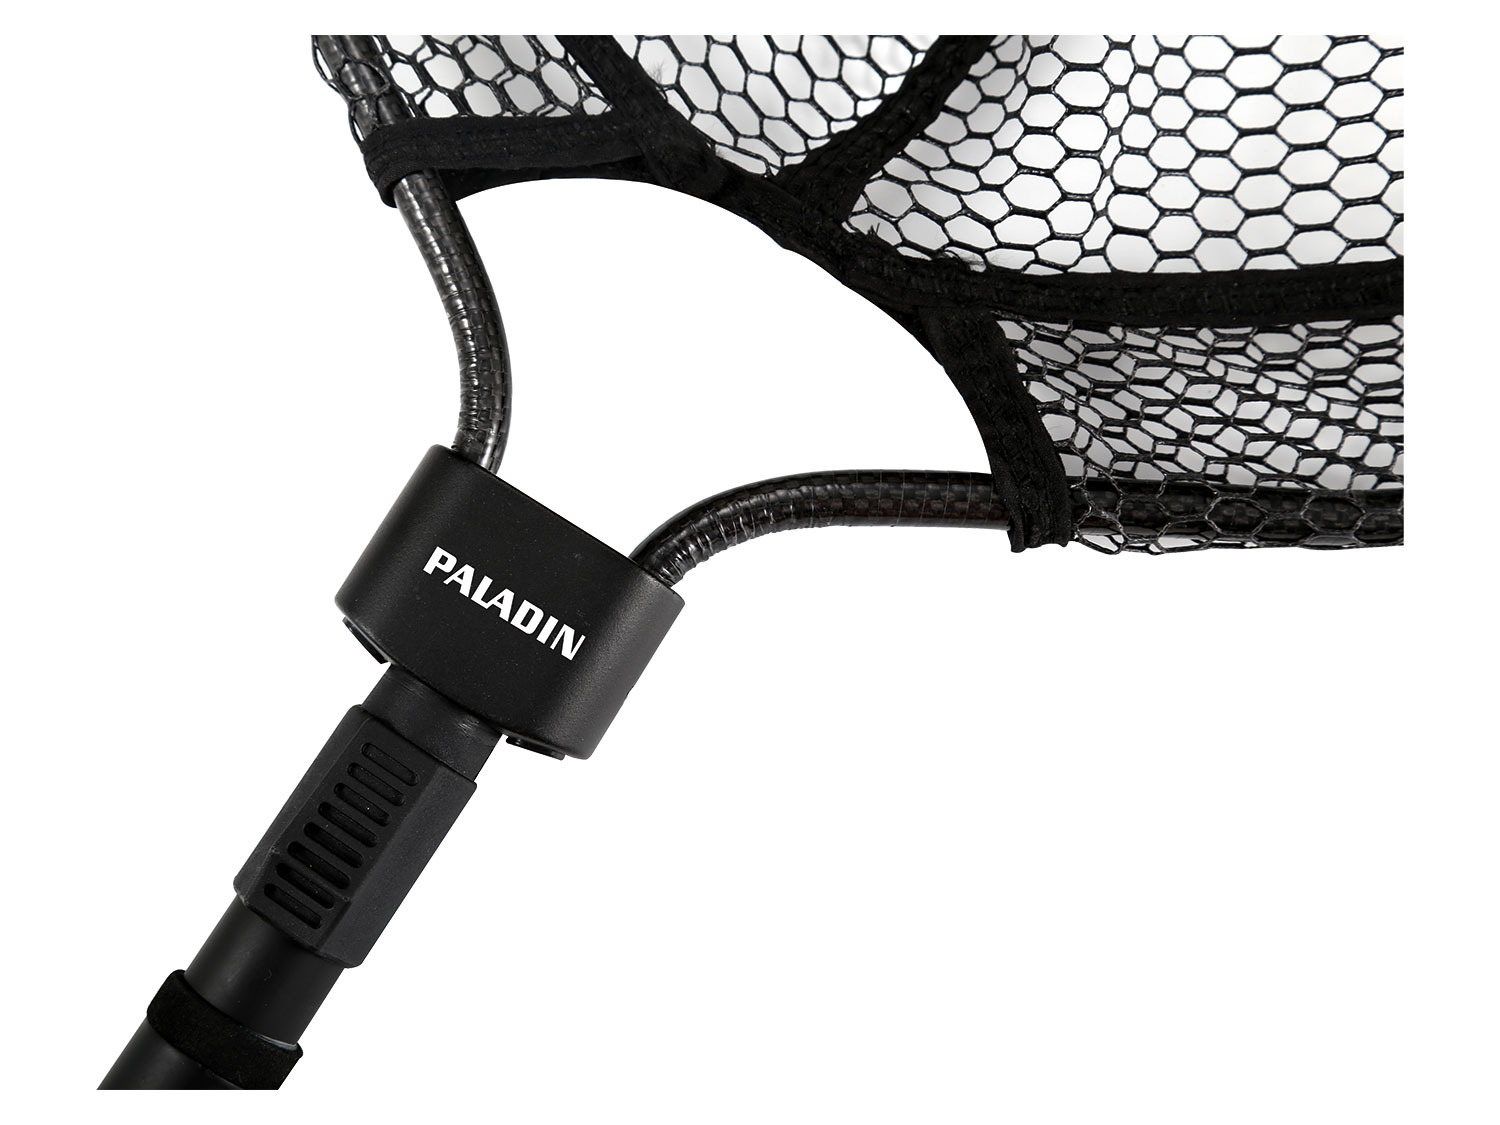 PALADIN® Carbon Telekescher oval gummiert 1,9m | LIDL